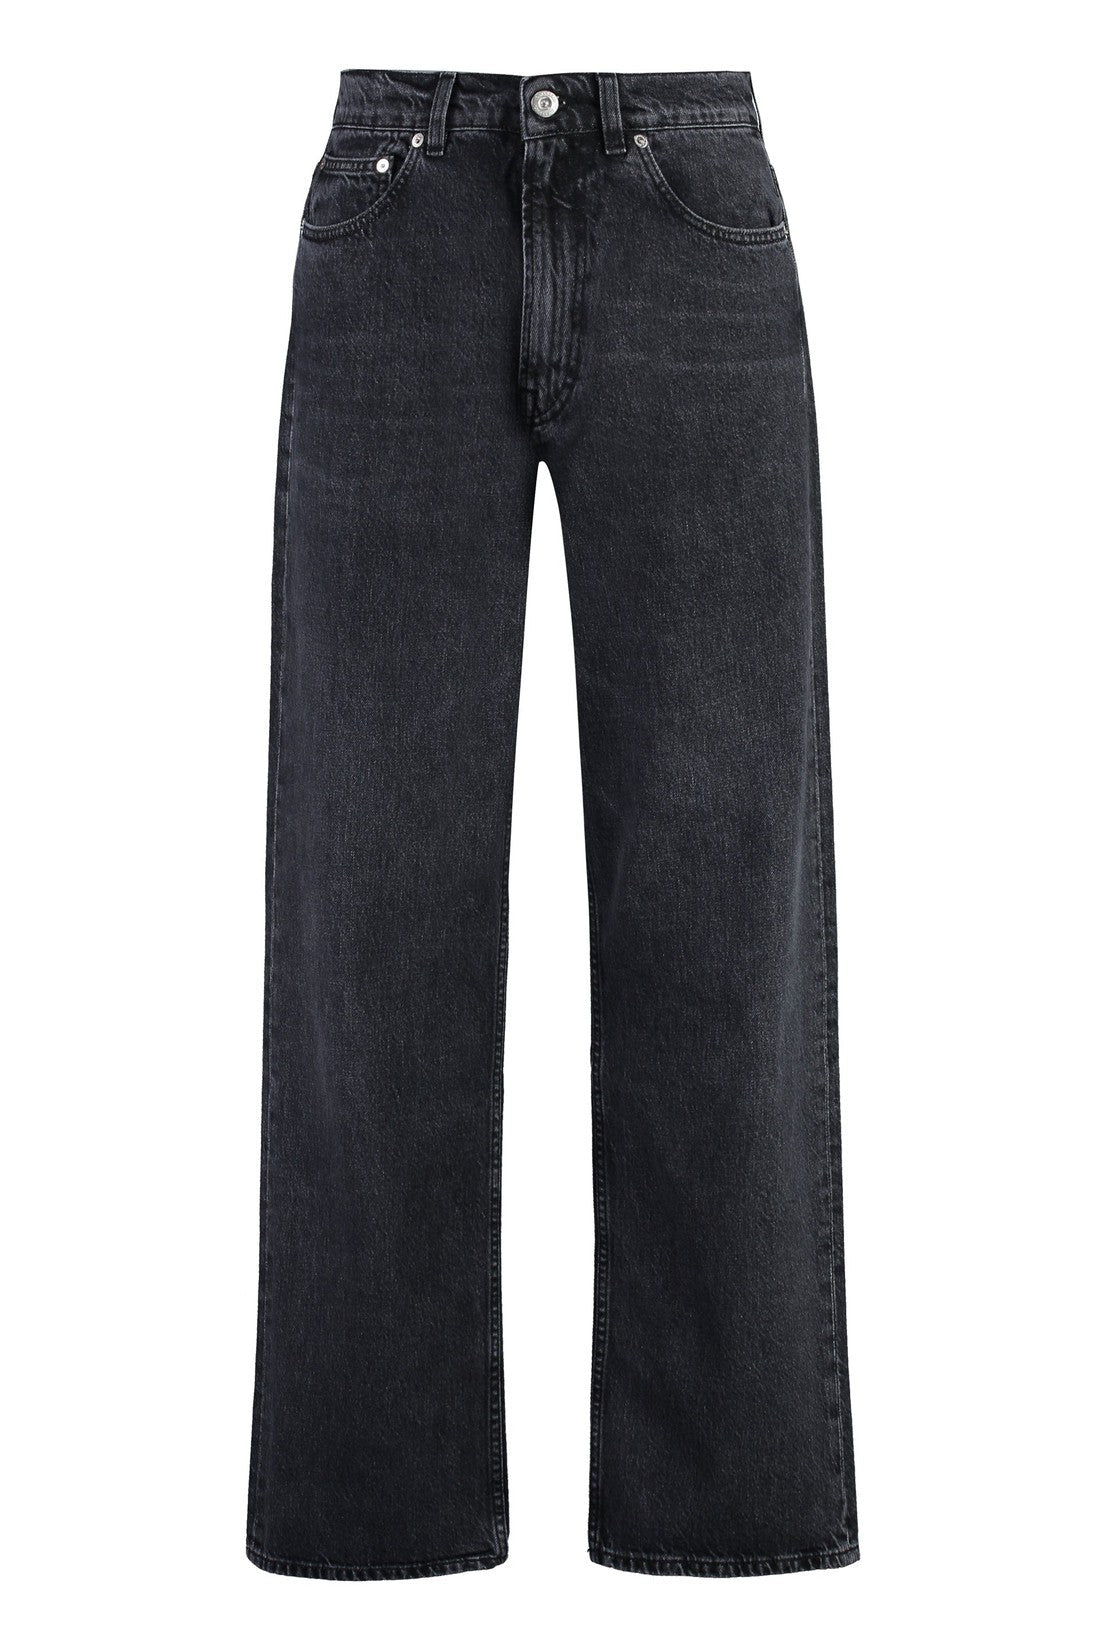 Our Legacy-OUTLET-SALE-Third Cut wide-leg jeans-ARCHIVIST